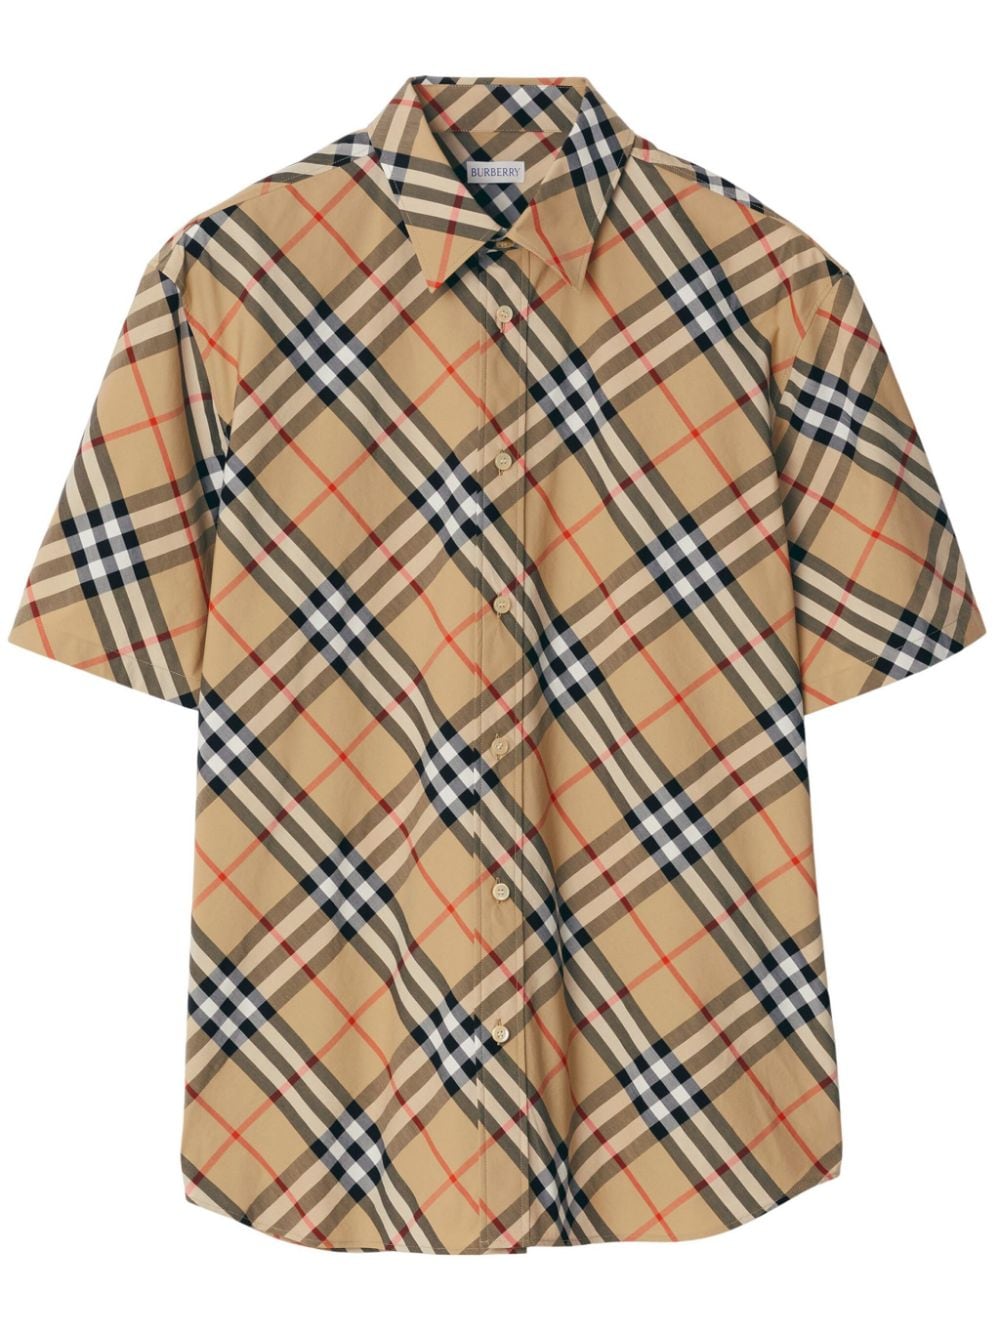 Burberry checked cotton shirt - Neutrals von Burberry